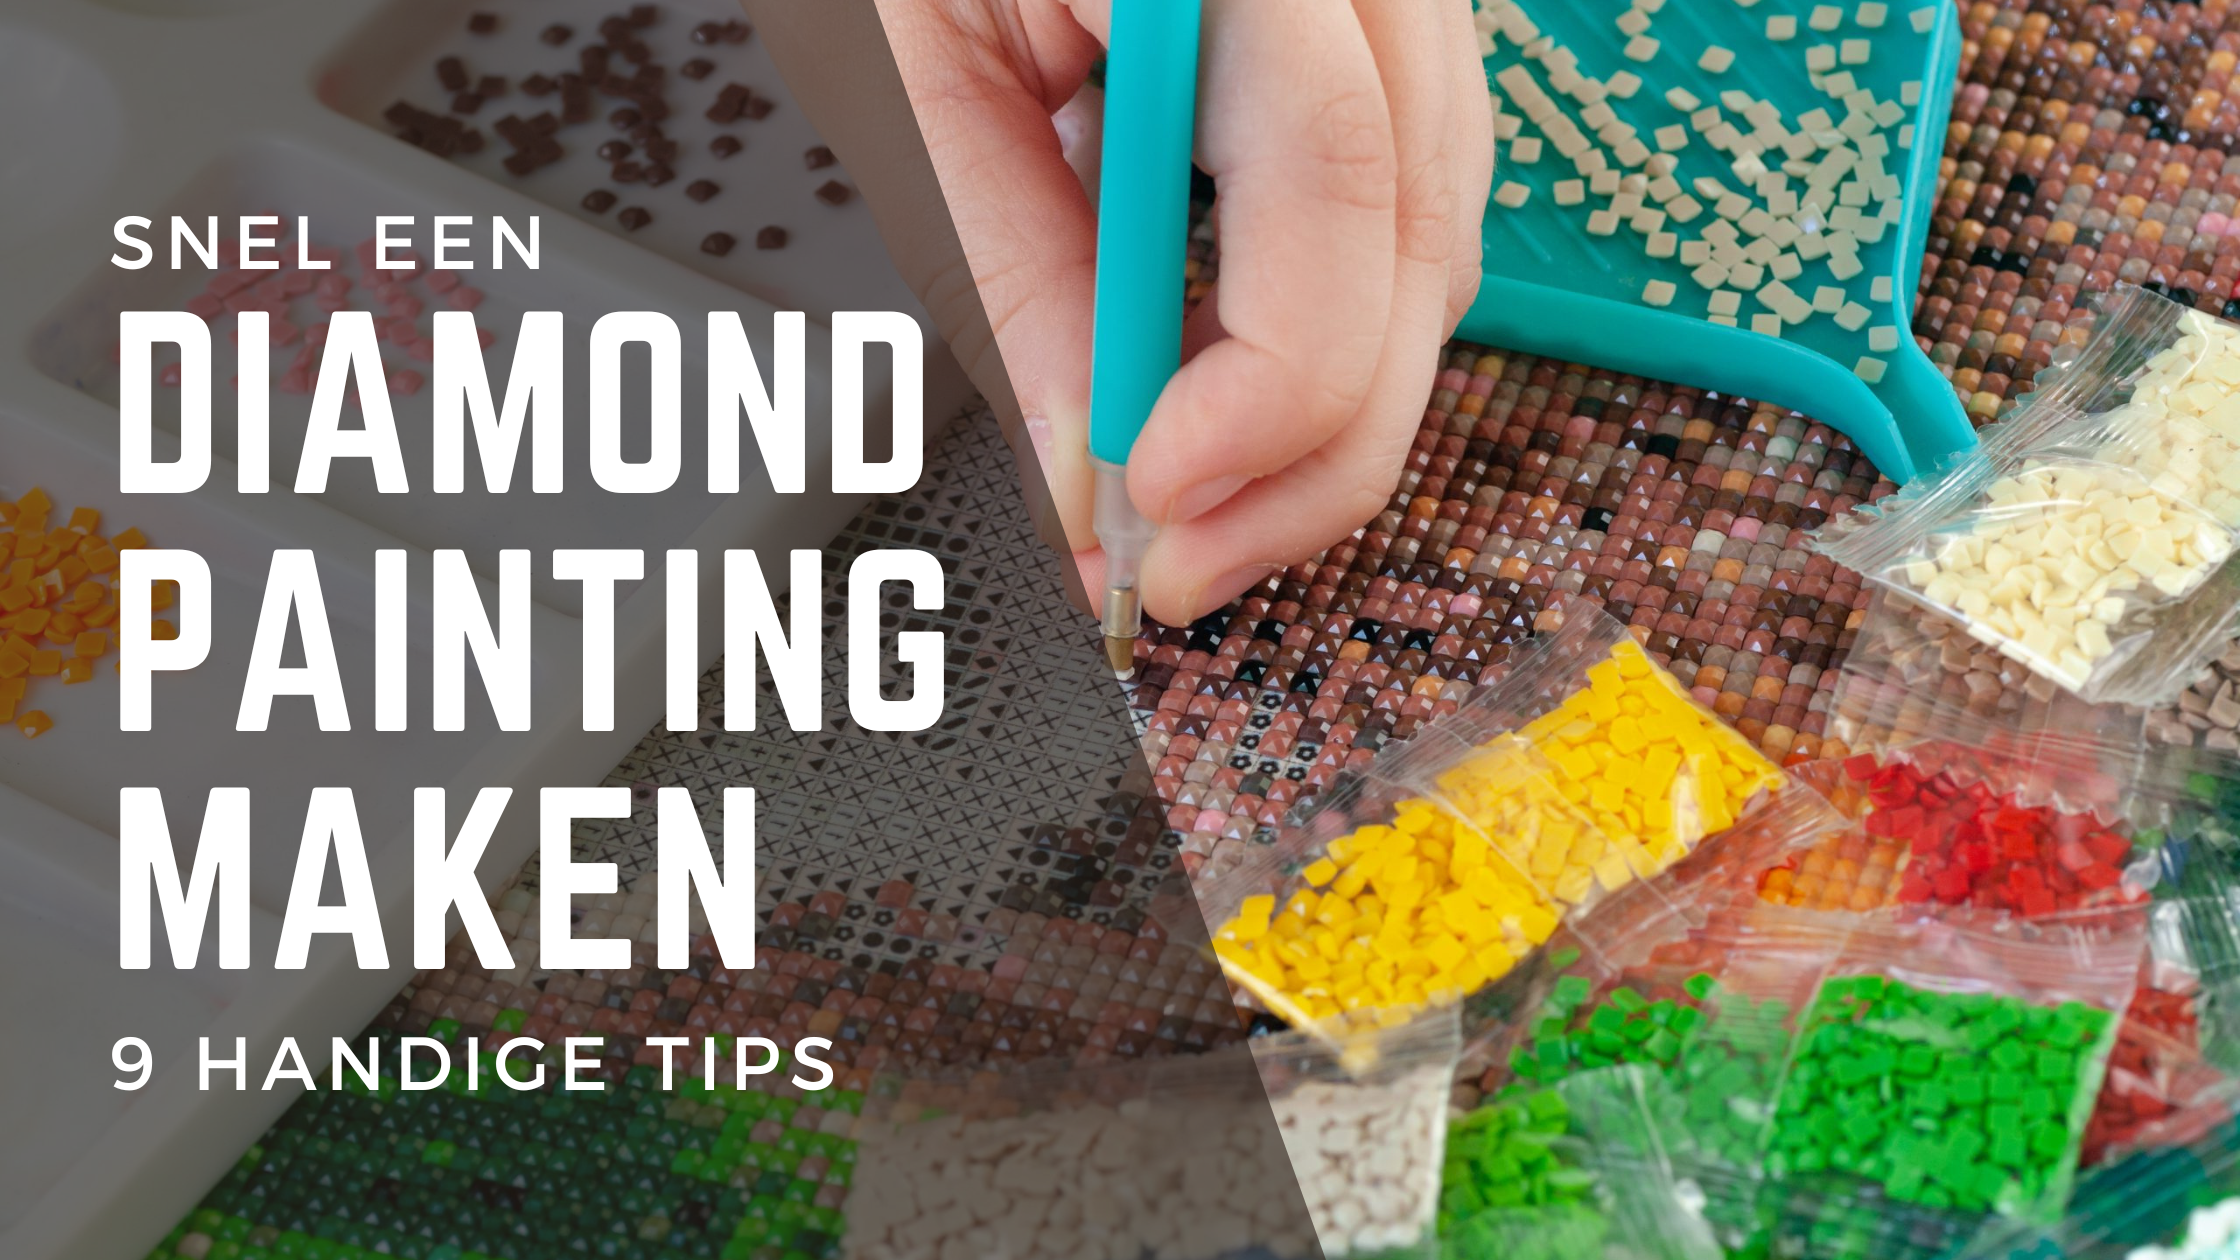 Snel een Diamond Painting maken: 9 handige tips - Diamond Painting Planet